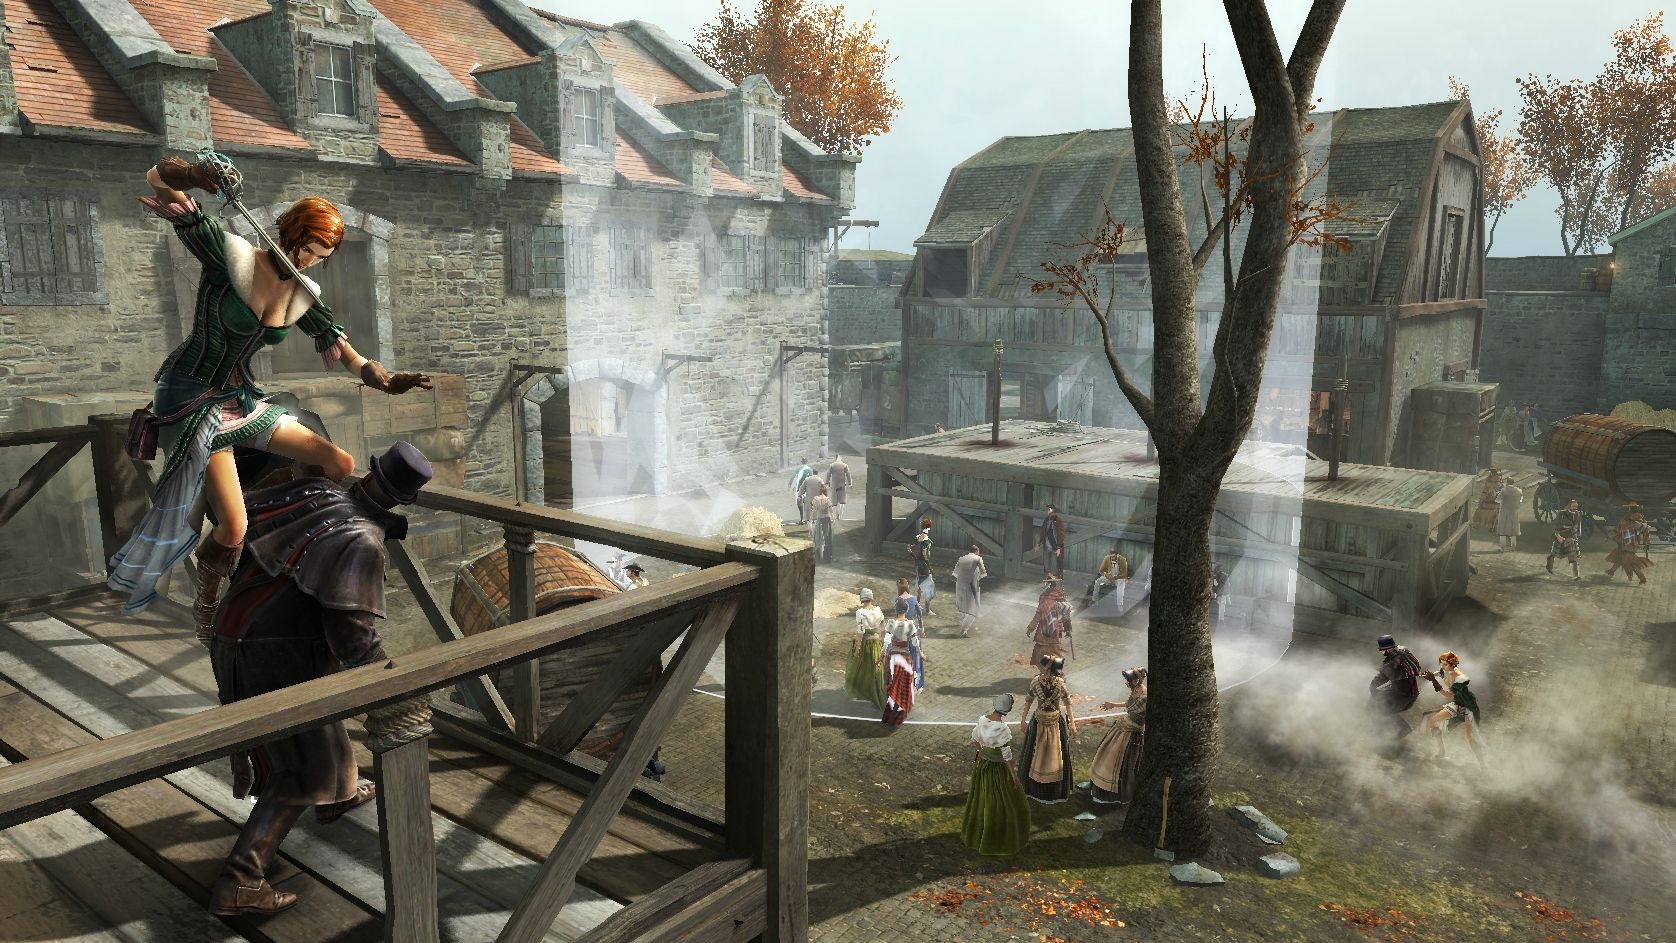 Новые варианты игр. Assassin's Creed 3. Assassin’s Creed III – 2012. Ассасин скрин 3. Assassin's Creed 3 мультиплеер.